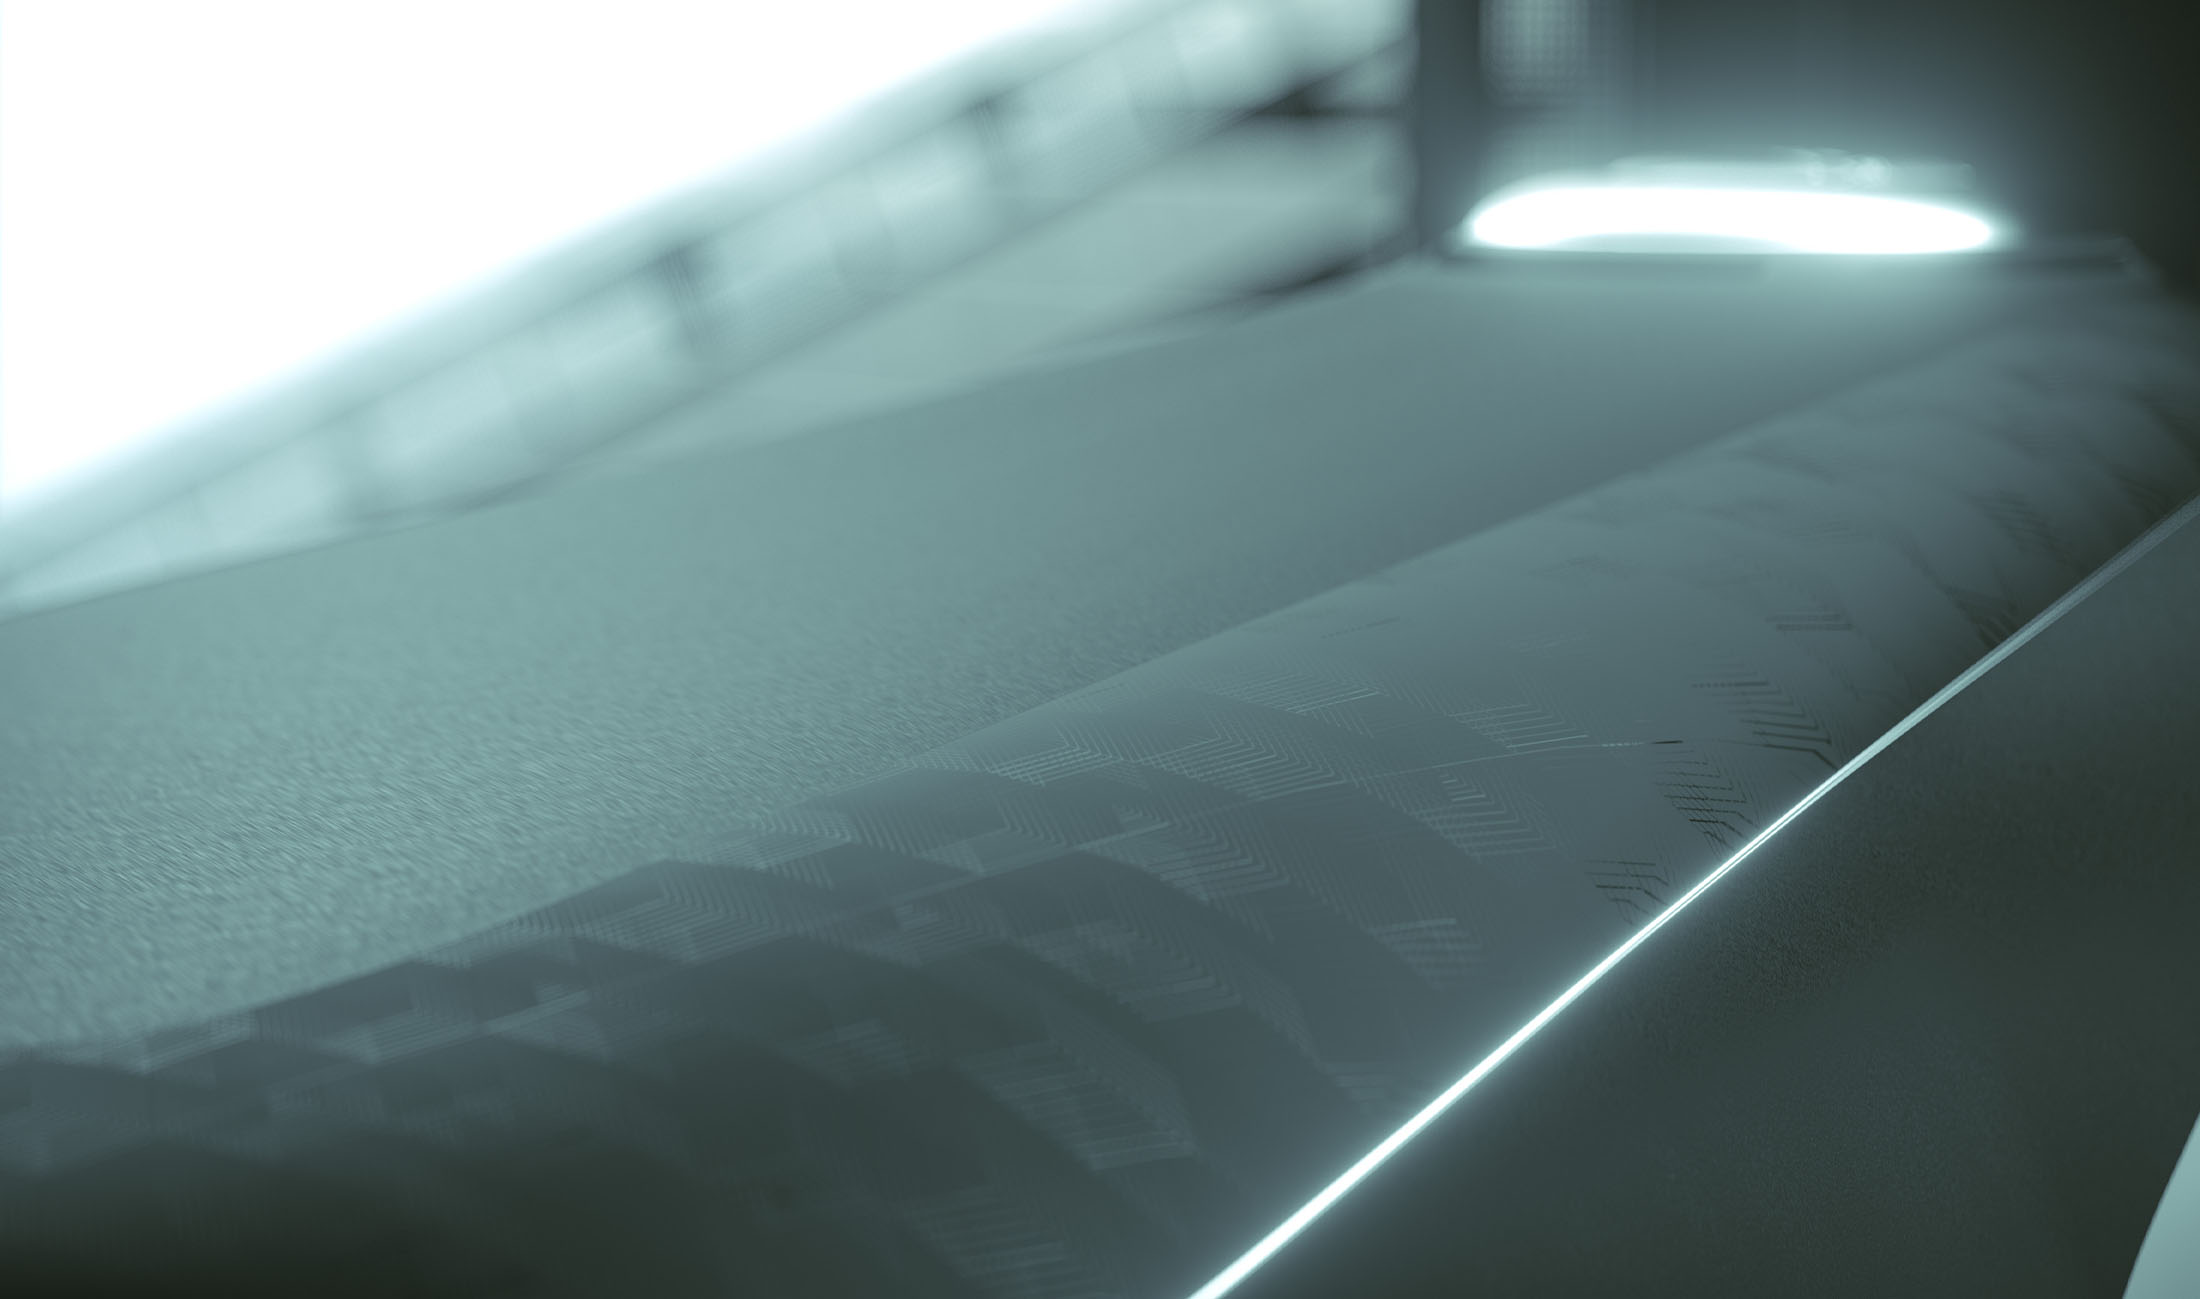 Detailbild Autotüre im Smart Surface Design mit Hinterleuchtung